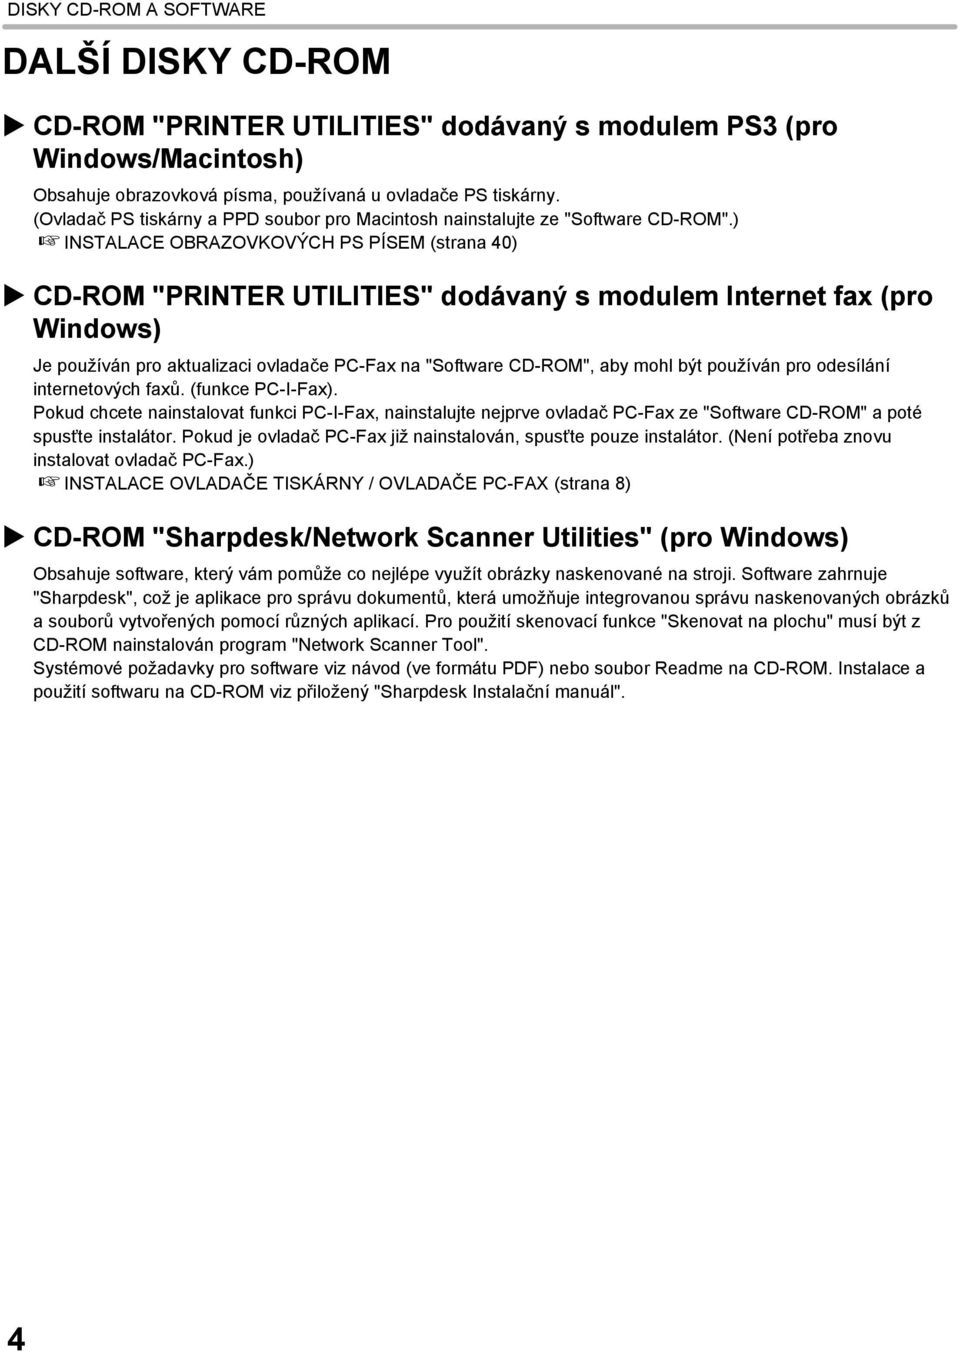 ) INSTALACE OBRAZOVKOVÝCH PS PÍSEM (strana 40) CD-ROM "PRINTER UTILITIES" dodávaný s modulem Internet fax (pro Windows) Je používán pro aktualizaci ovladače PC-Fax na "Software CD-ROM", aby mohl být